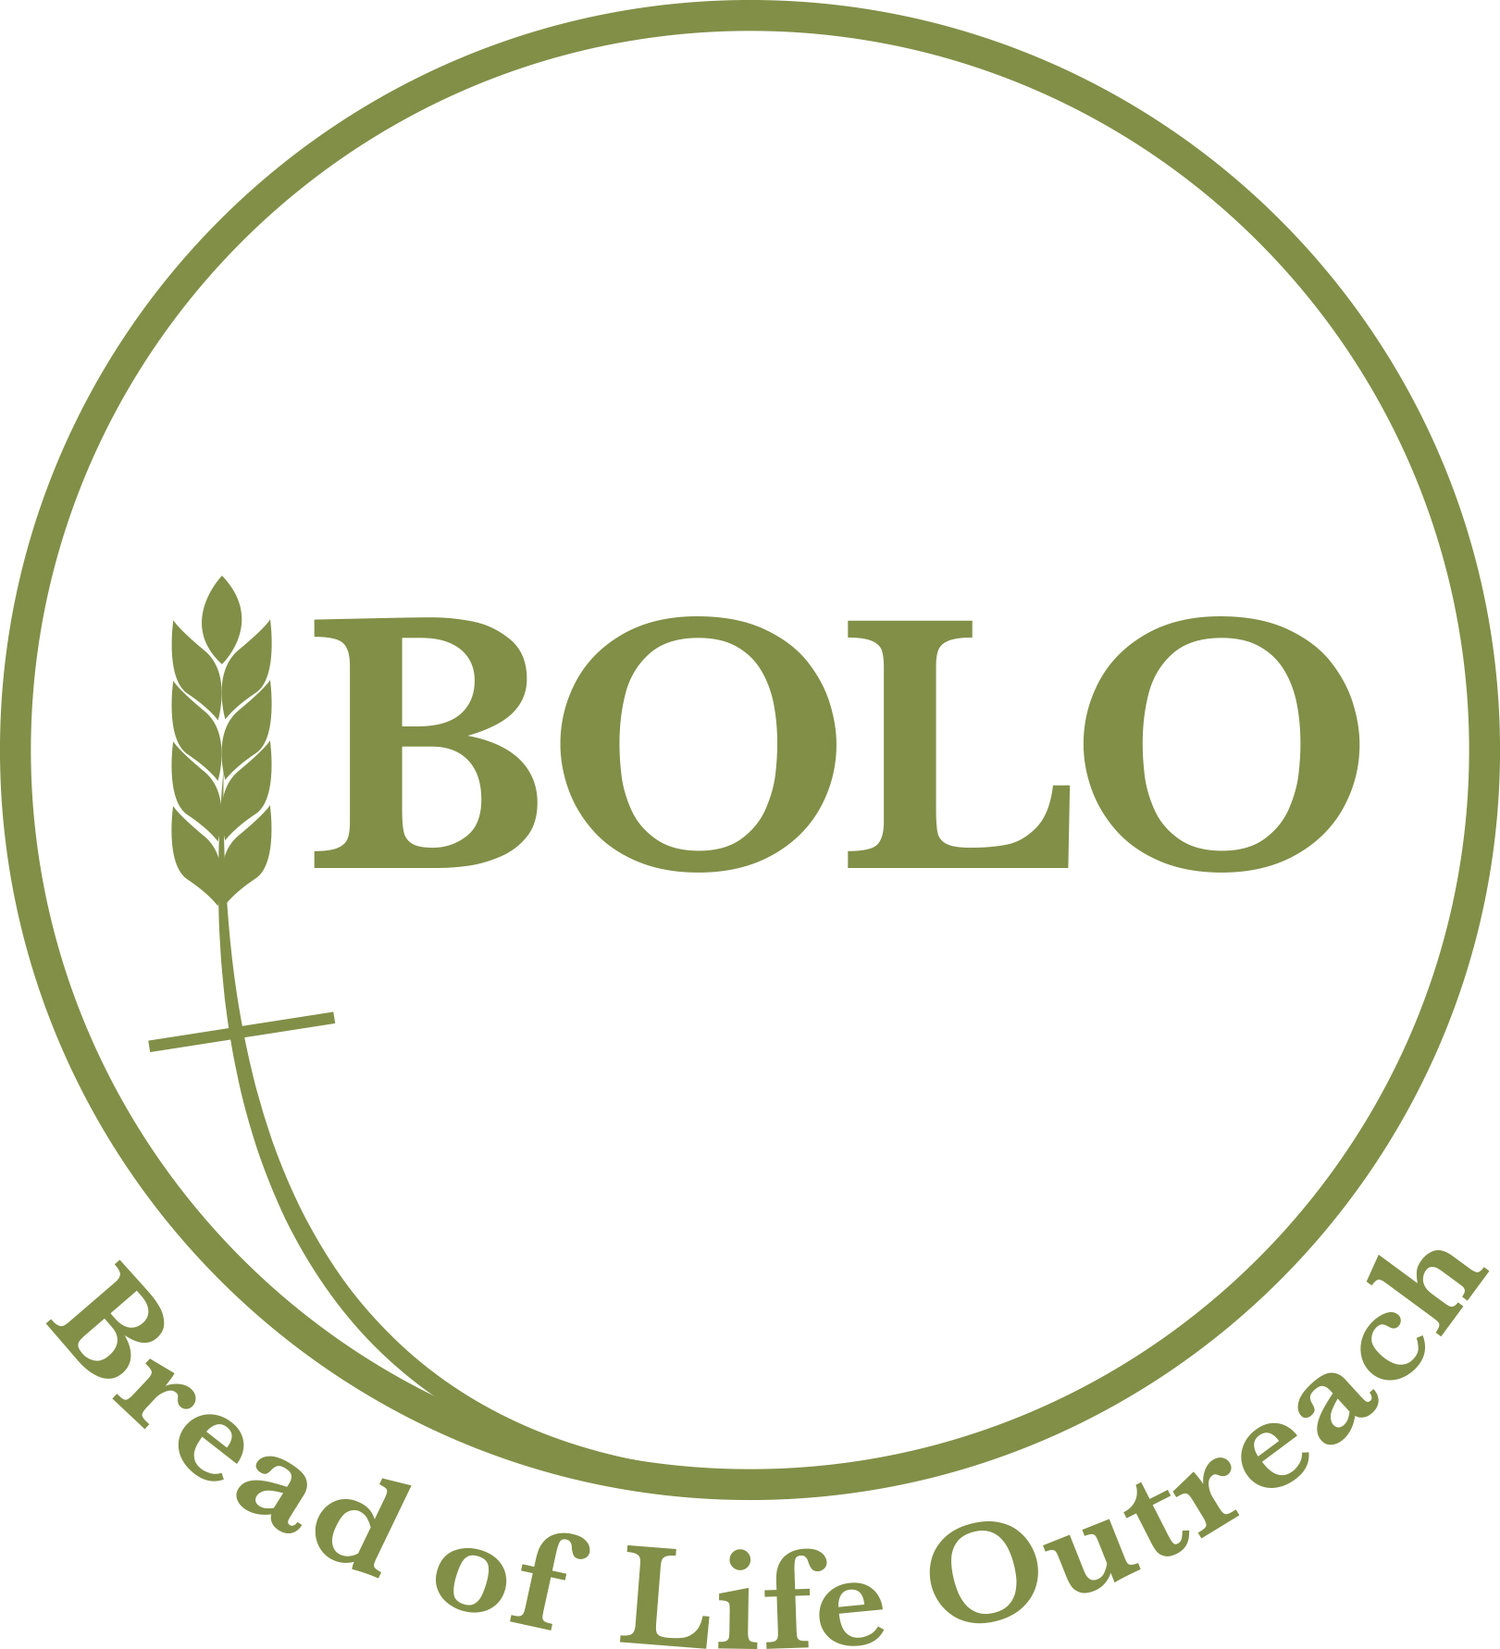 Bread of Life Outreach Center